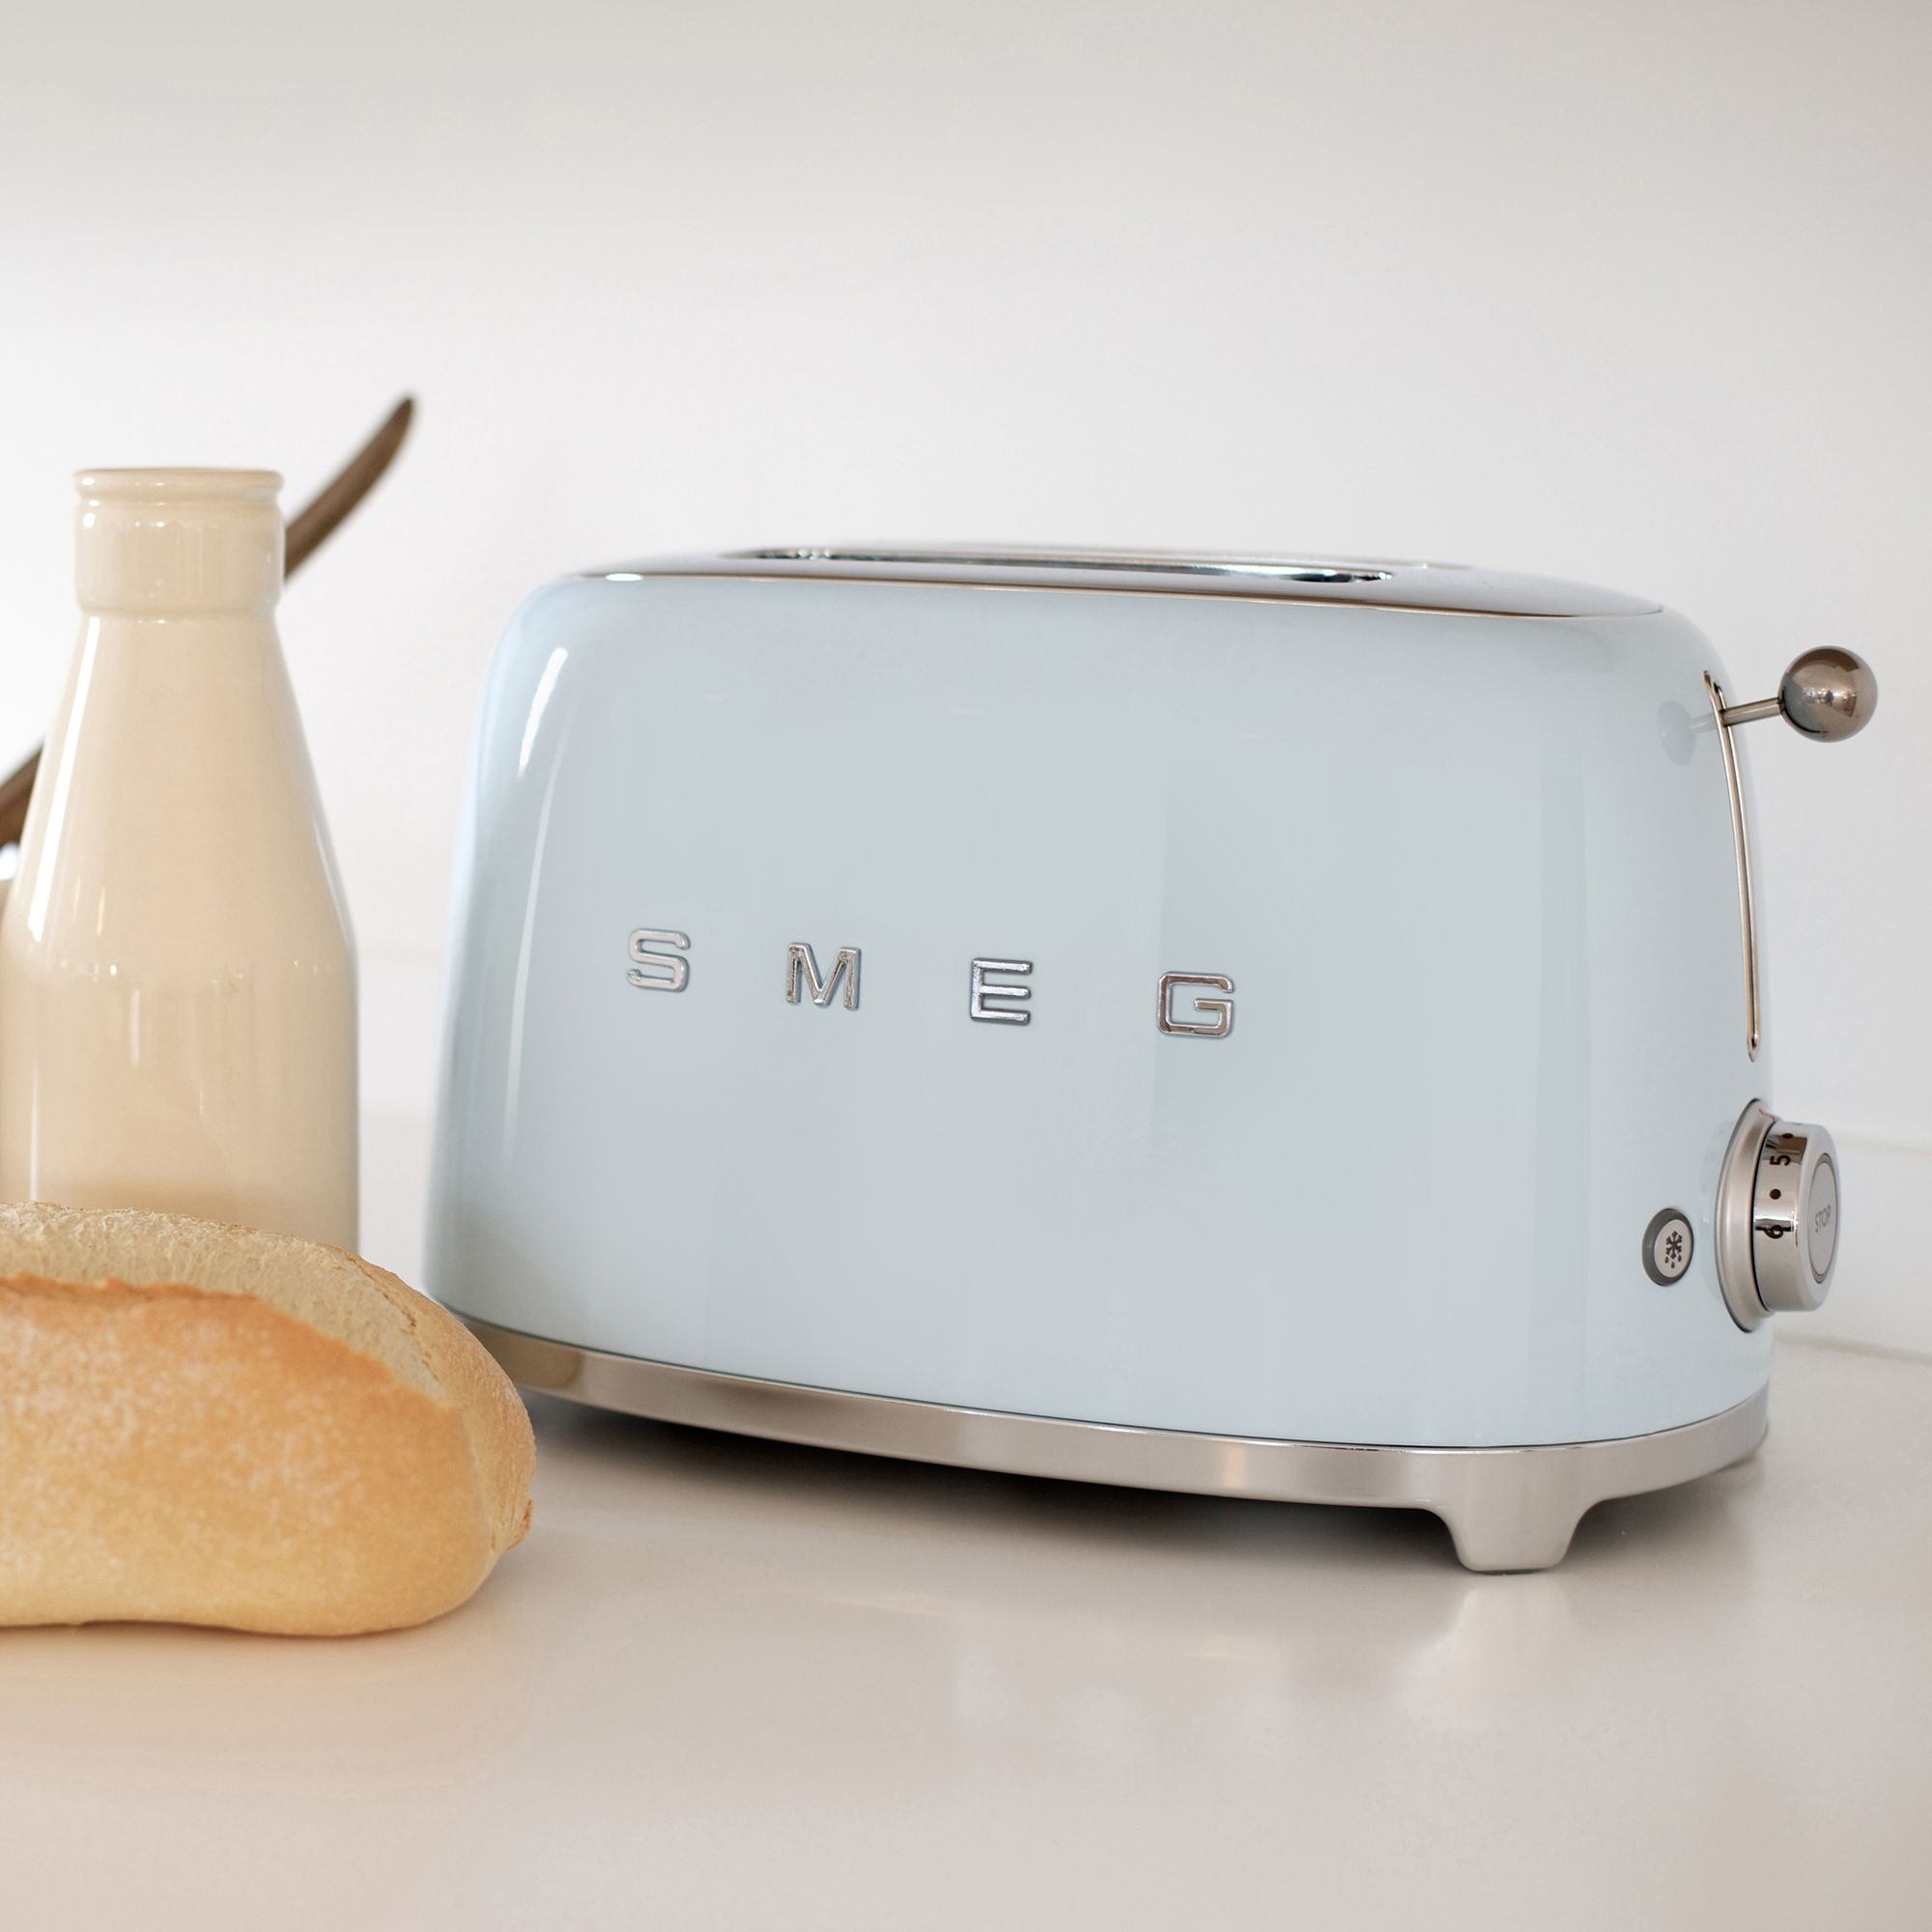 Smeg 50's Retro Style 2 Slice Toaster Pastel Blue Image 2